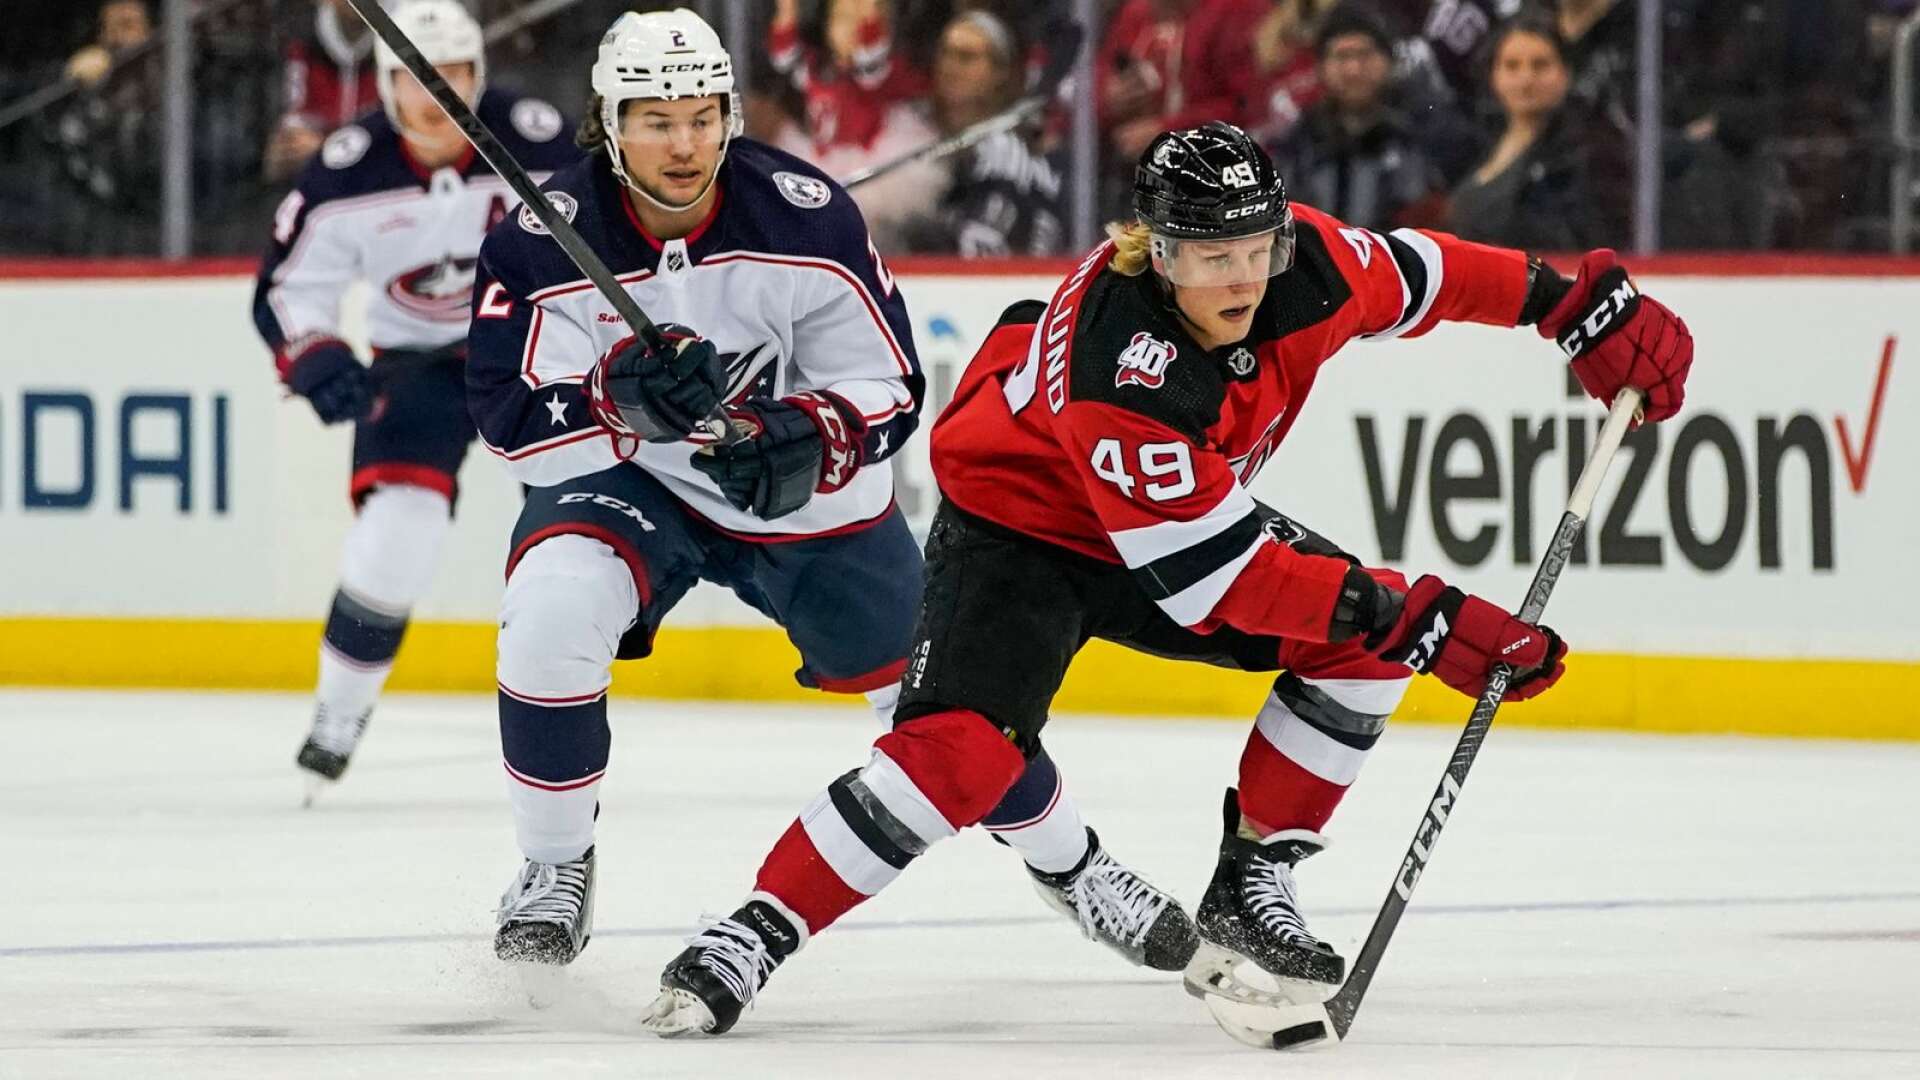 New Jersey Devils har fått ut ännu mer av Fabian Zetterlund denna säsong, värmlänningen går mot ett nytt succéår i NHL.